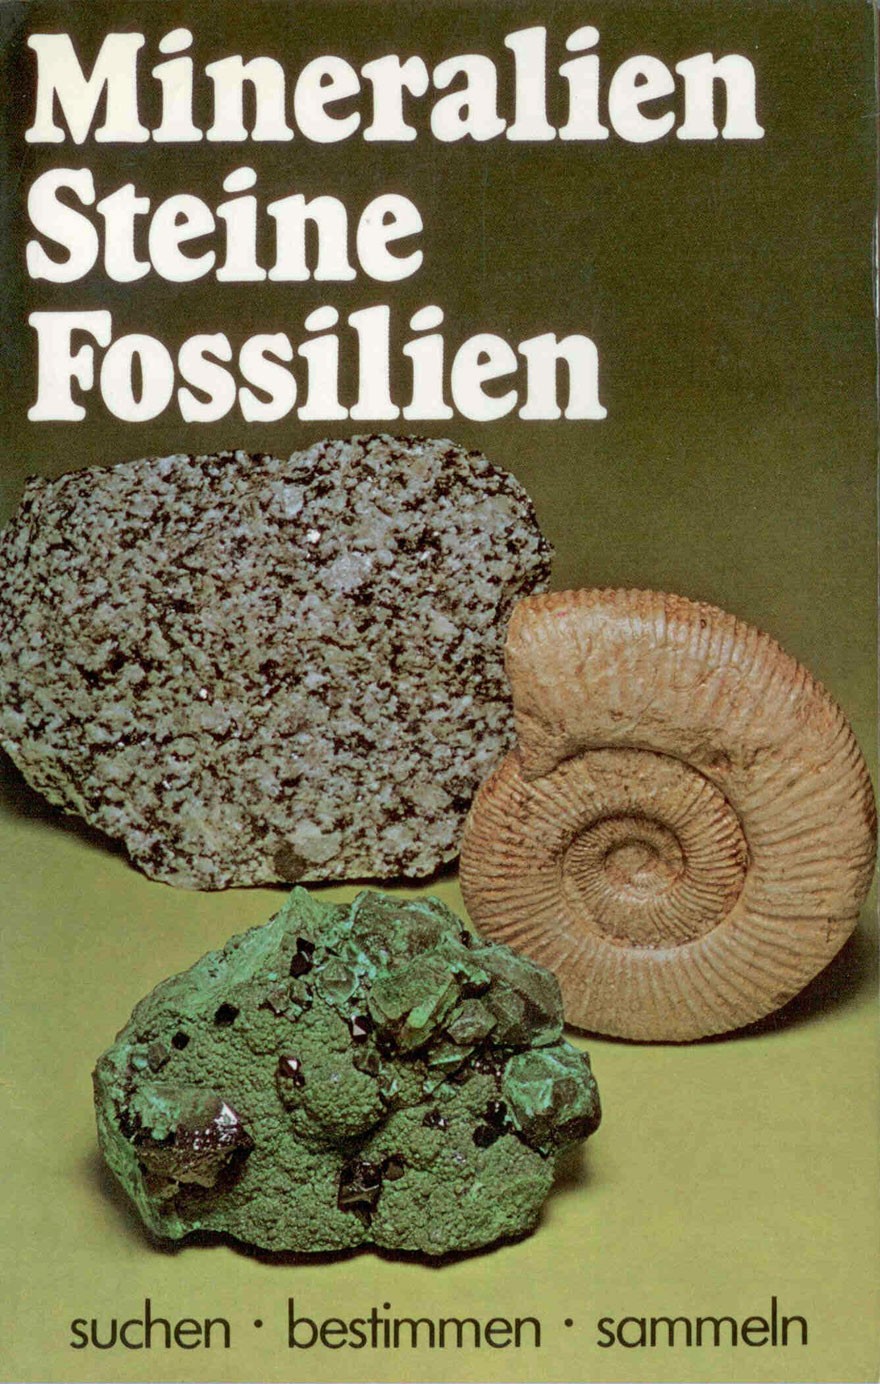 Wolthens, C.: Mineralien Steine Fossilien - suchen bestimmen sammeln